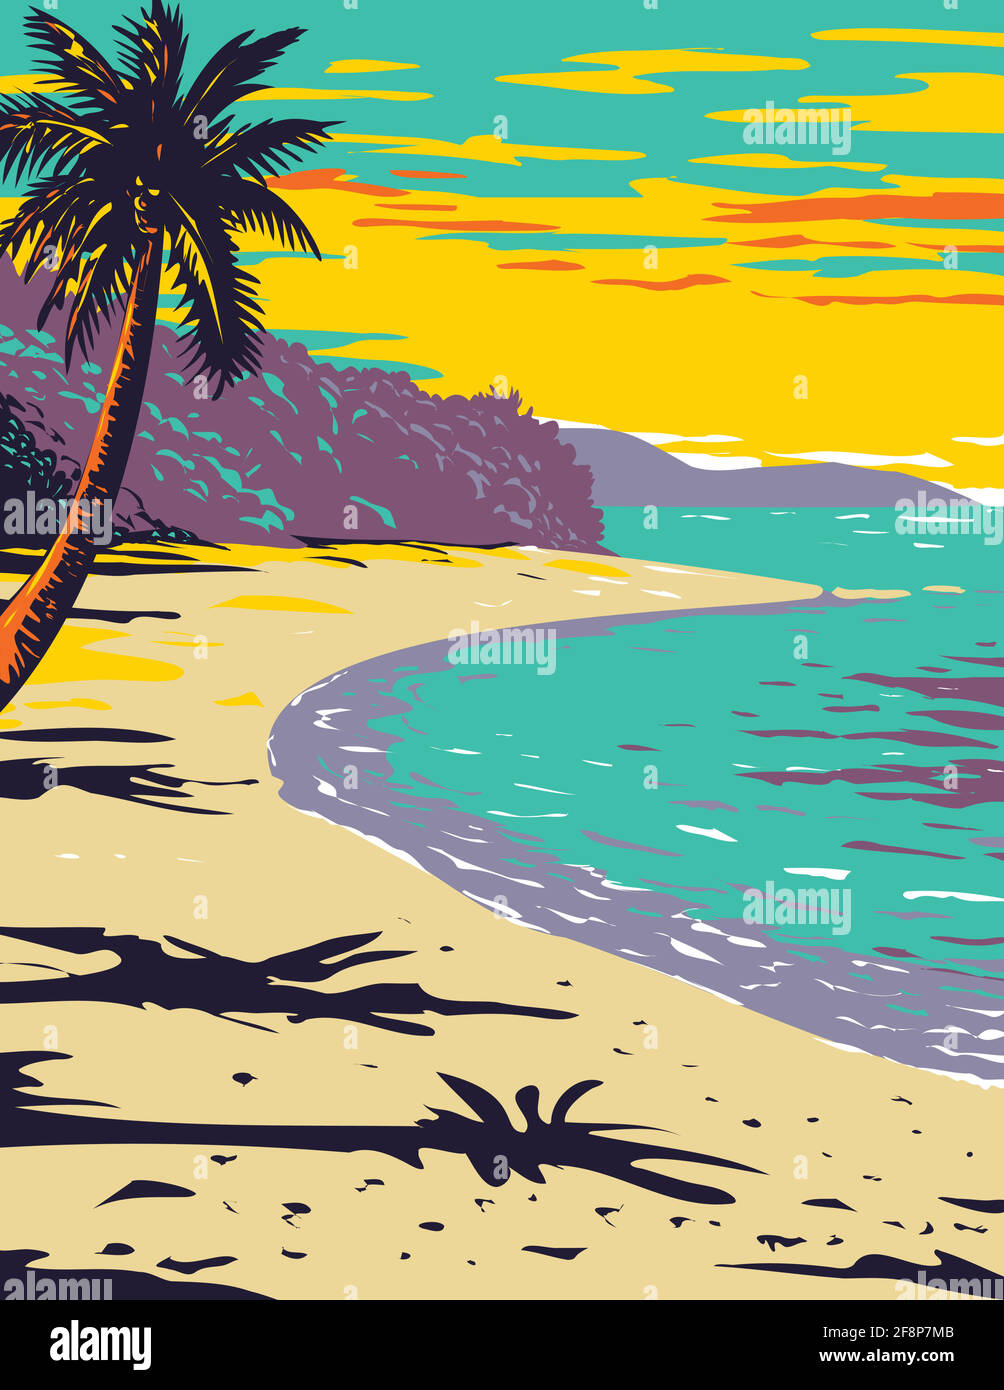 WPA Poster Art of Trunk Bay Beach situato all'interno di Virgin Isole Parco Nazionale sull'isola di San Giovanni in Il mare caraibico fatto in lavori di progetto adm Illustrazione Vettoriale